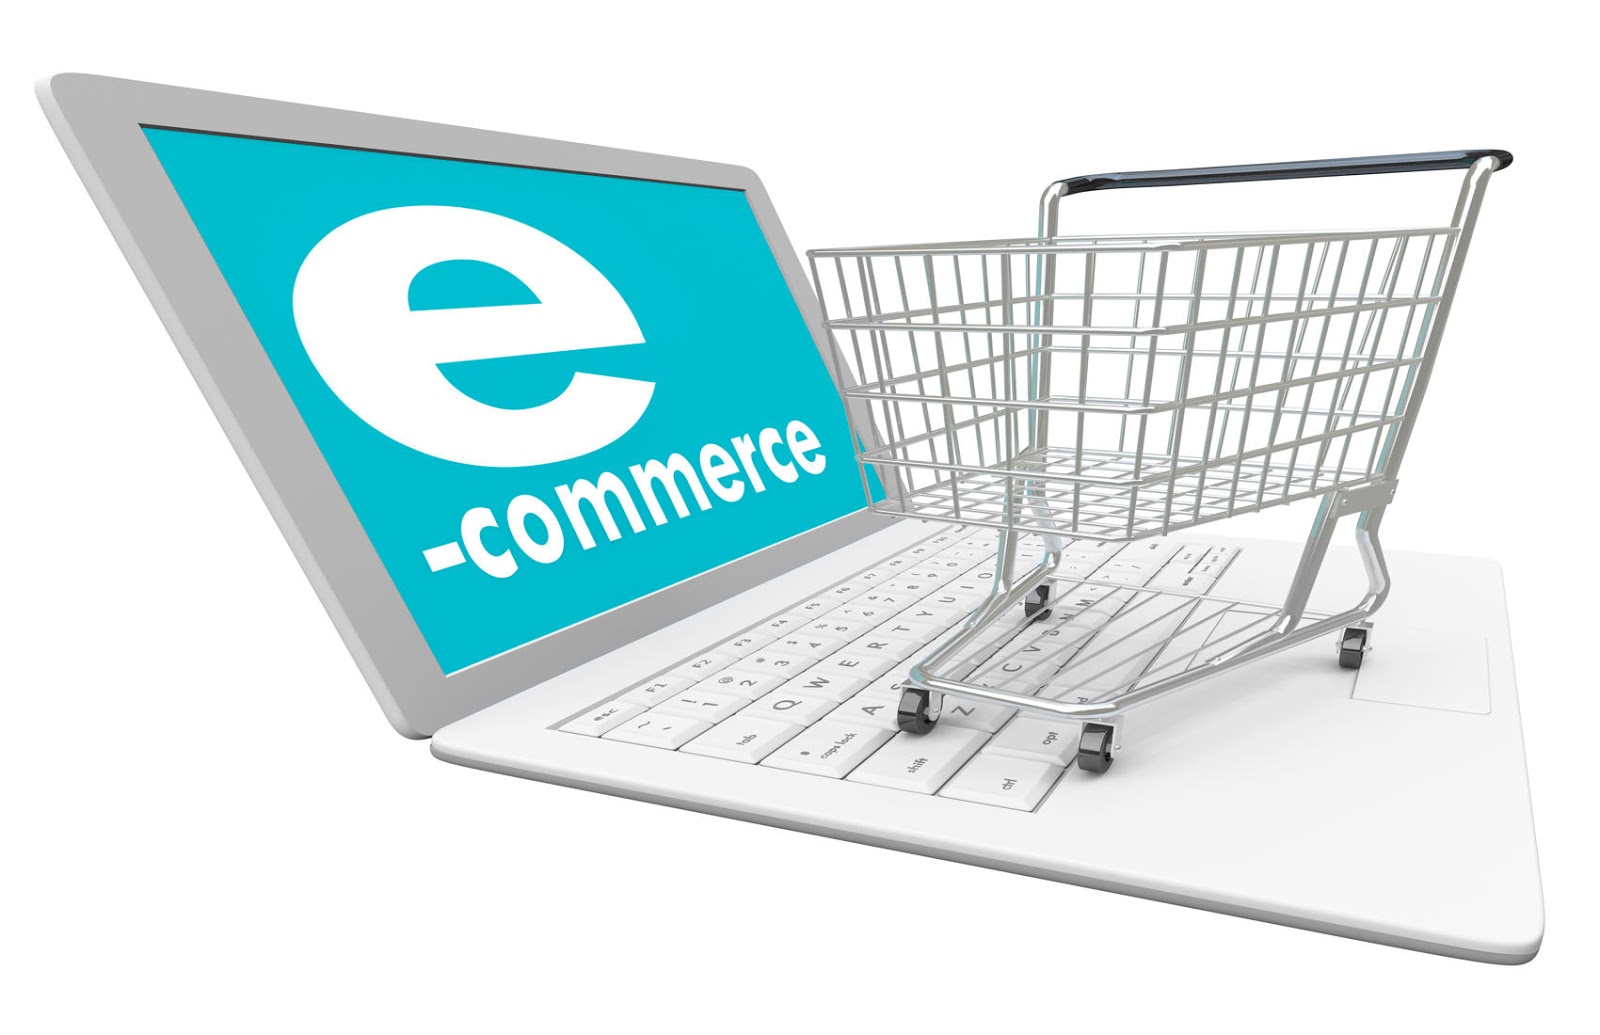 Компании интернет торговли. Электронная торговля. Электронная коммерция в интернете. Электронной коммерции «e-Commerce».. Розничная торговля и электронная коммерция.